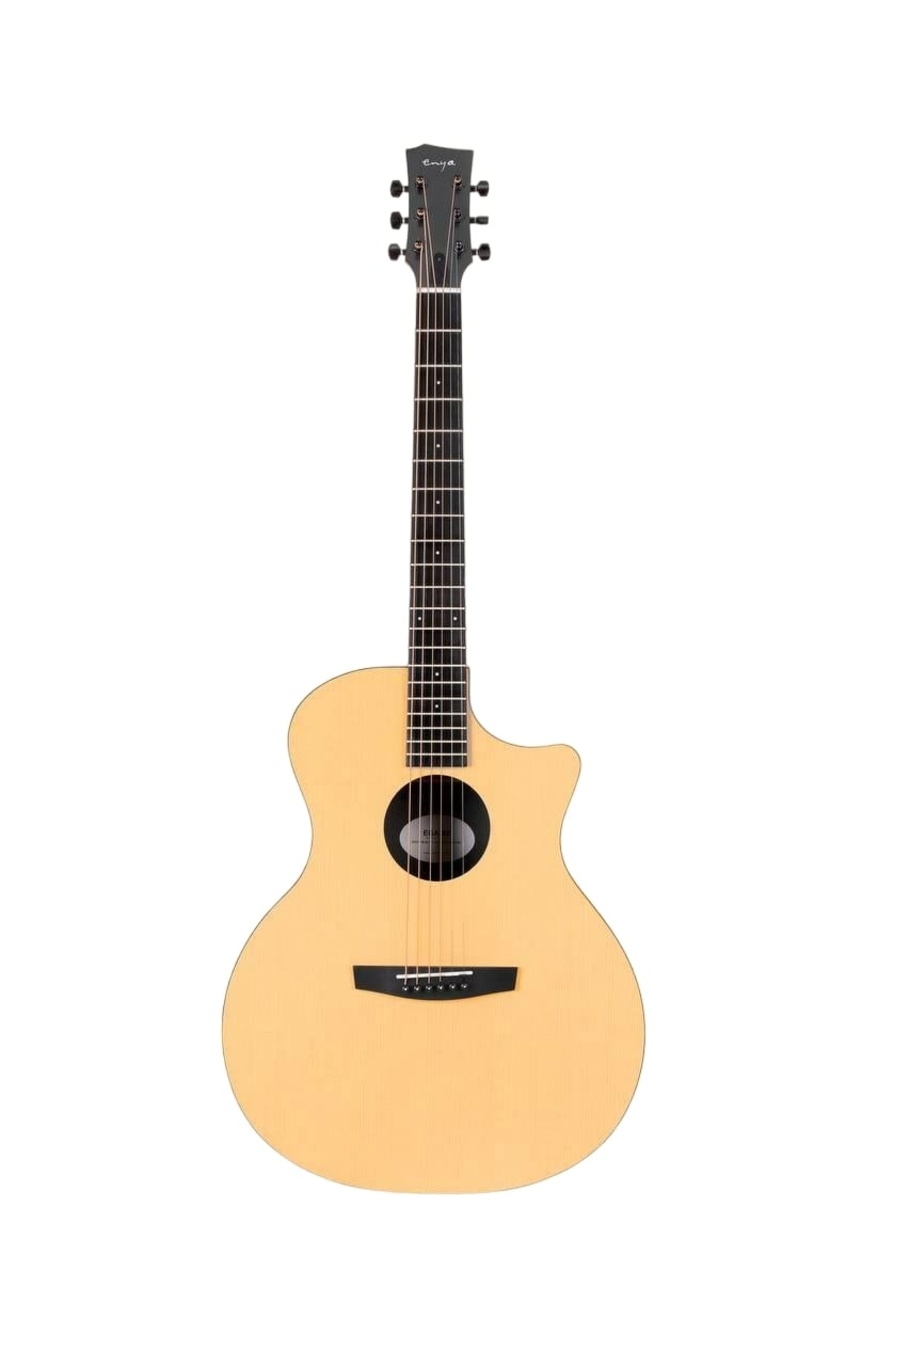 Трансакустические гитары Enya EGA-X0/NA.S0.EQ трансакустические гитары lava lava me 4 carbon 36 white чехол в комплекте